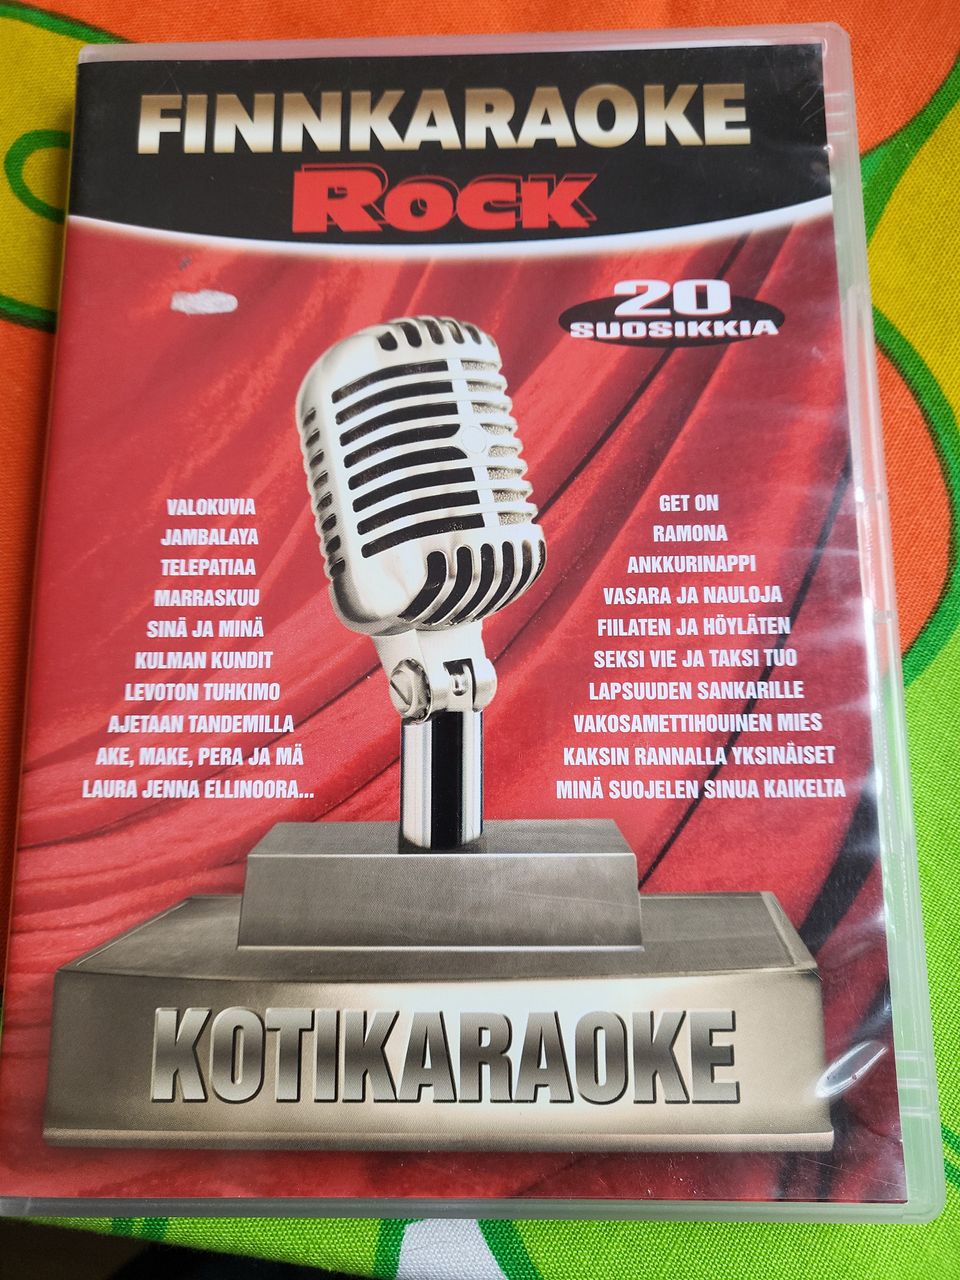 Finnkaraoke Rock 20 suosikkia DVD